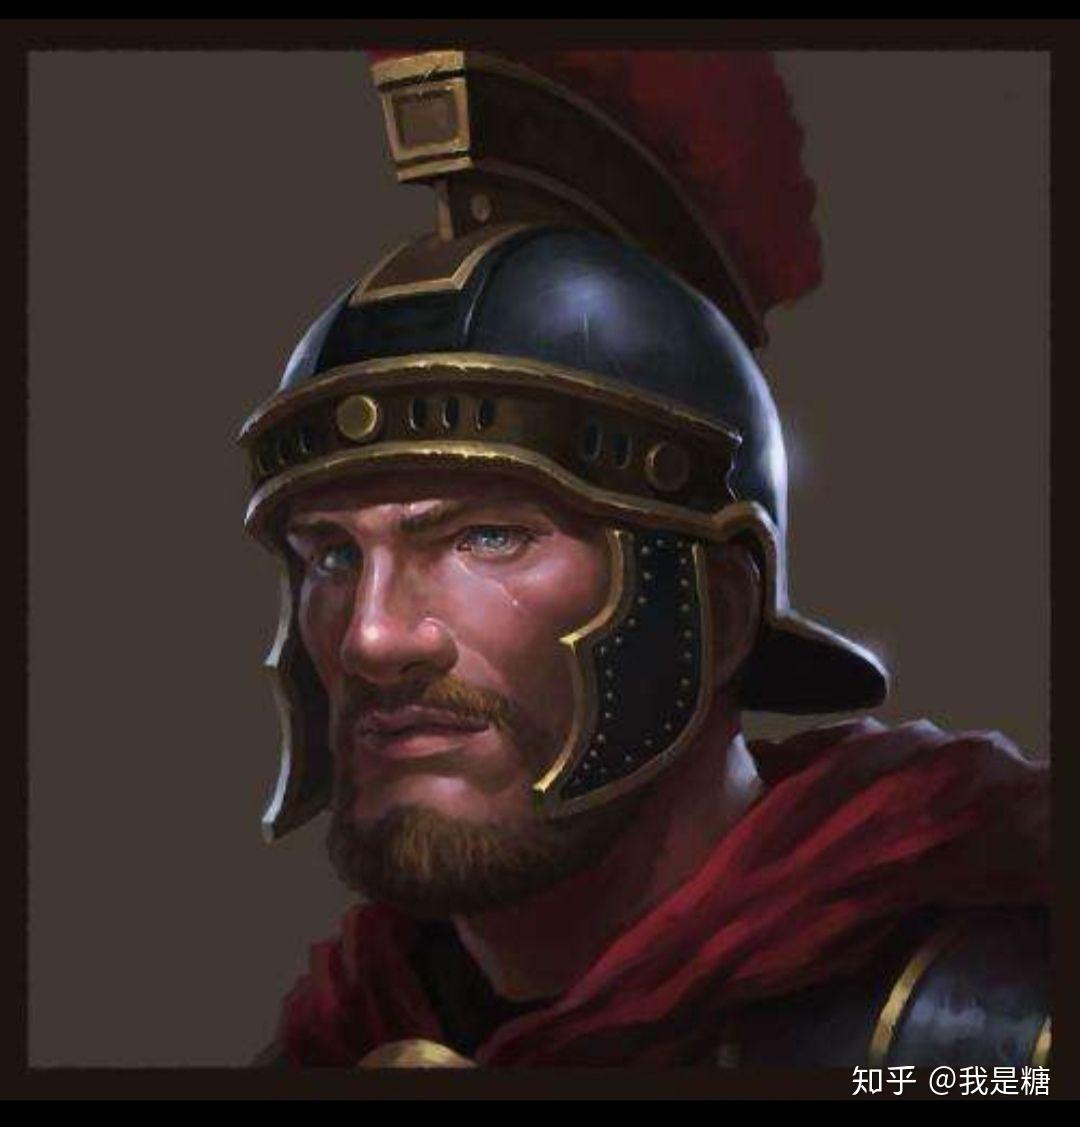 背景为古罗马,诸多兵种种族(日耳曼,罗马),游戏头像为古罗马士兵的